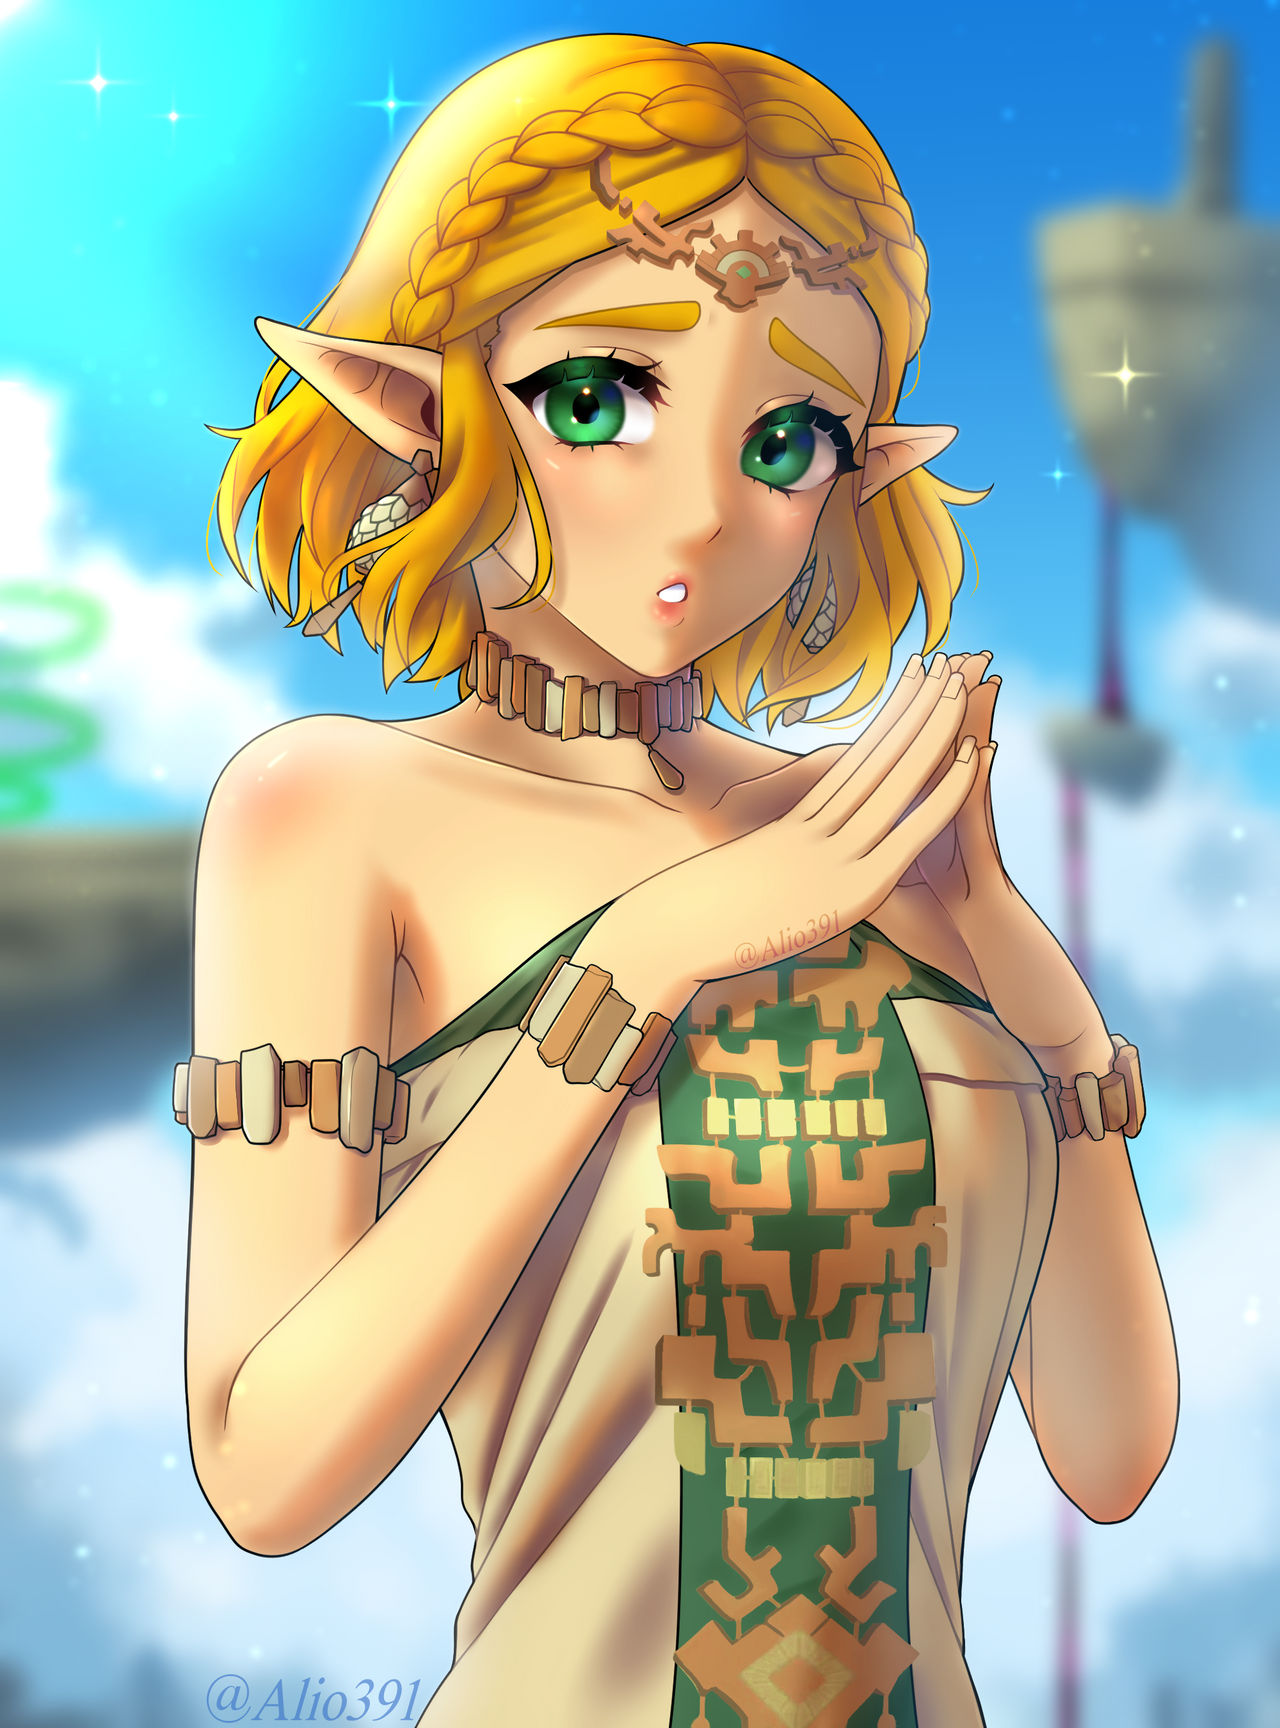 Legend of Zelda TOTK Link Bead Art by KamaPixel on DeviantArt